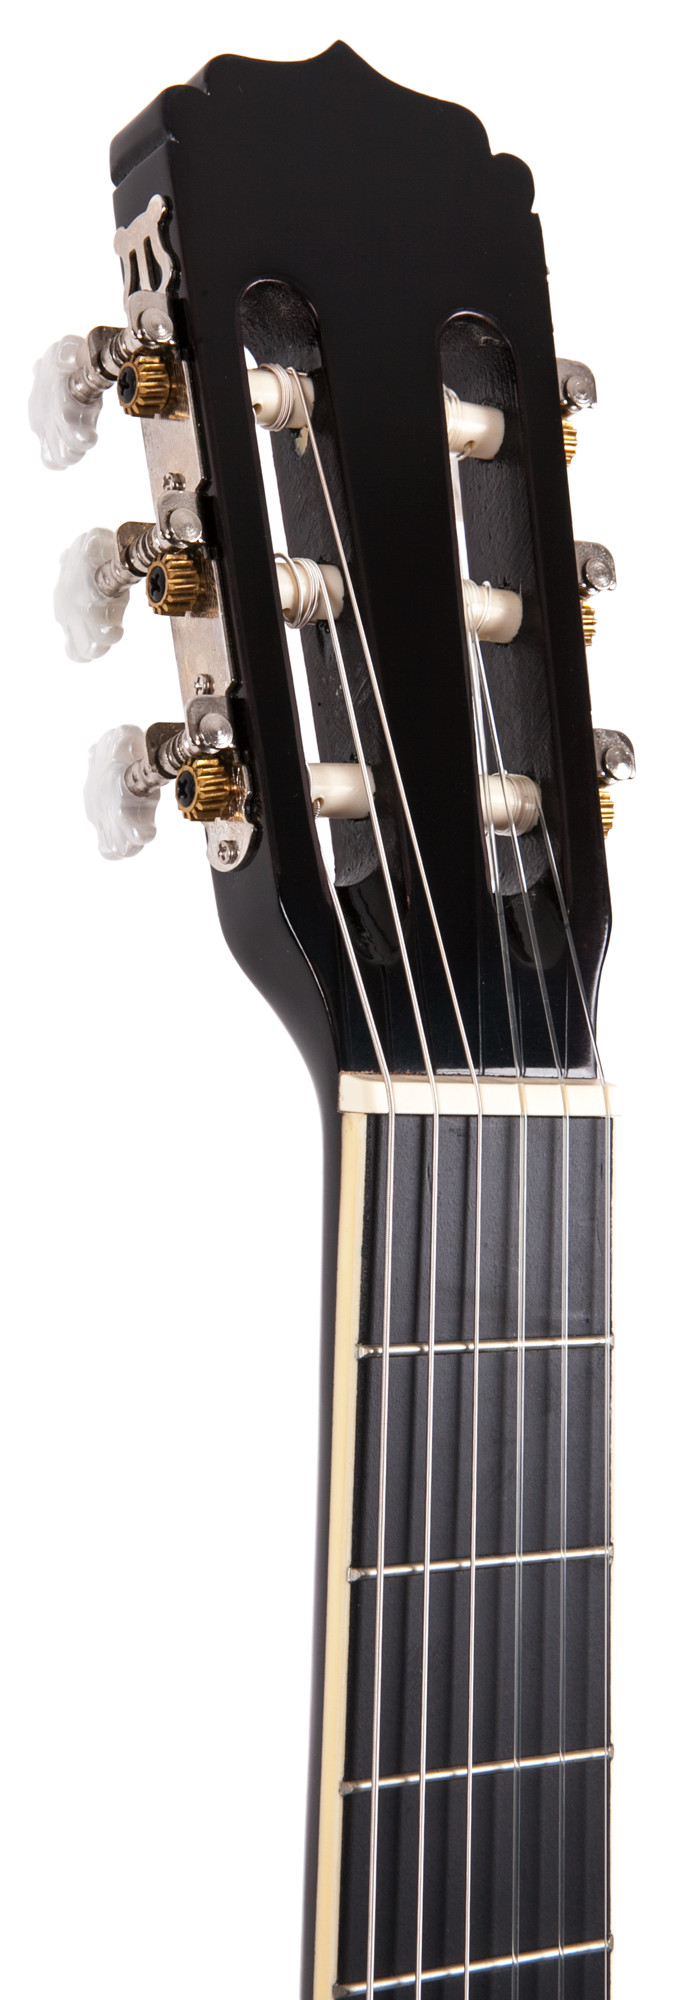 ARIA FIESTA FST-200 N Гитара классическая, верх: американская липа купить в prostore.me